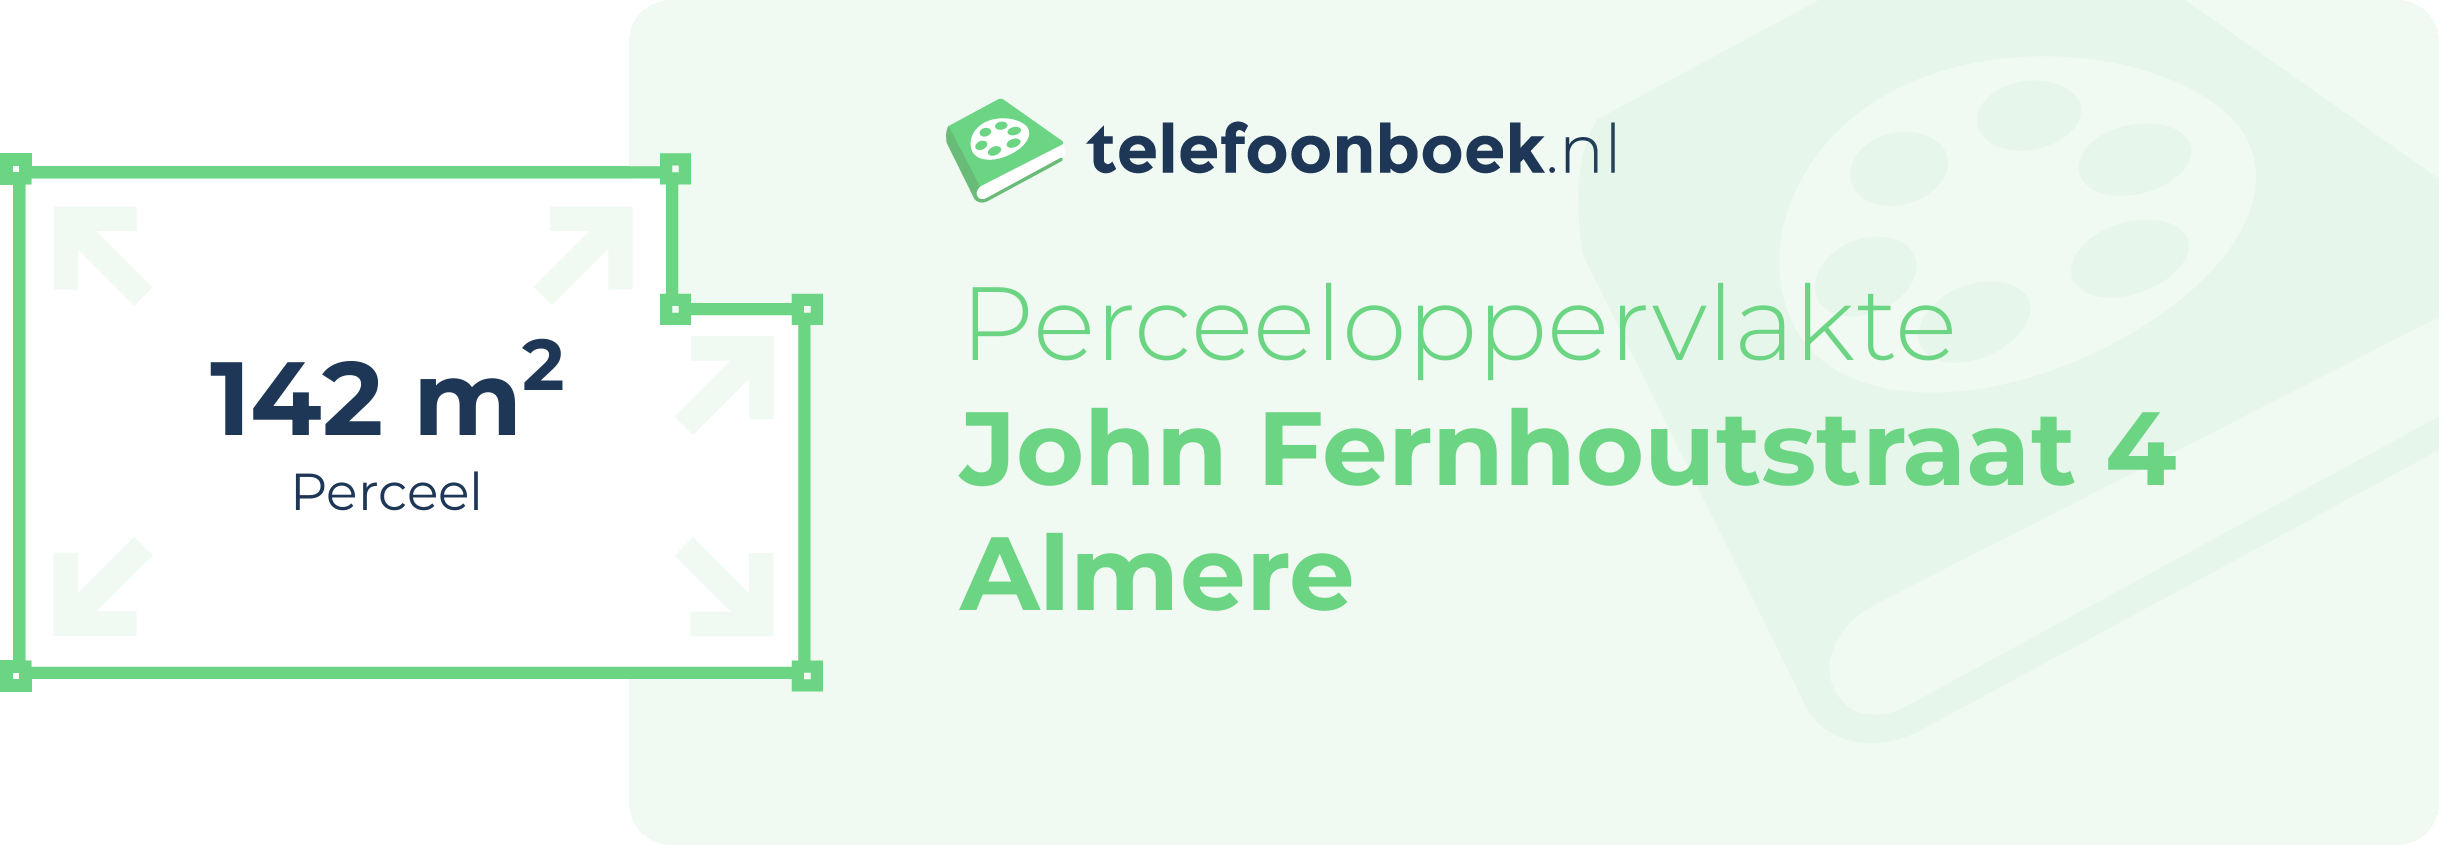 Perceeloppervlakte John Fernhoutstraat 4 Almere